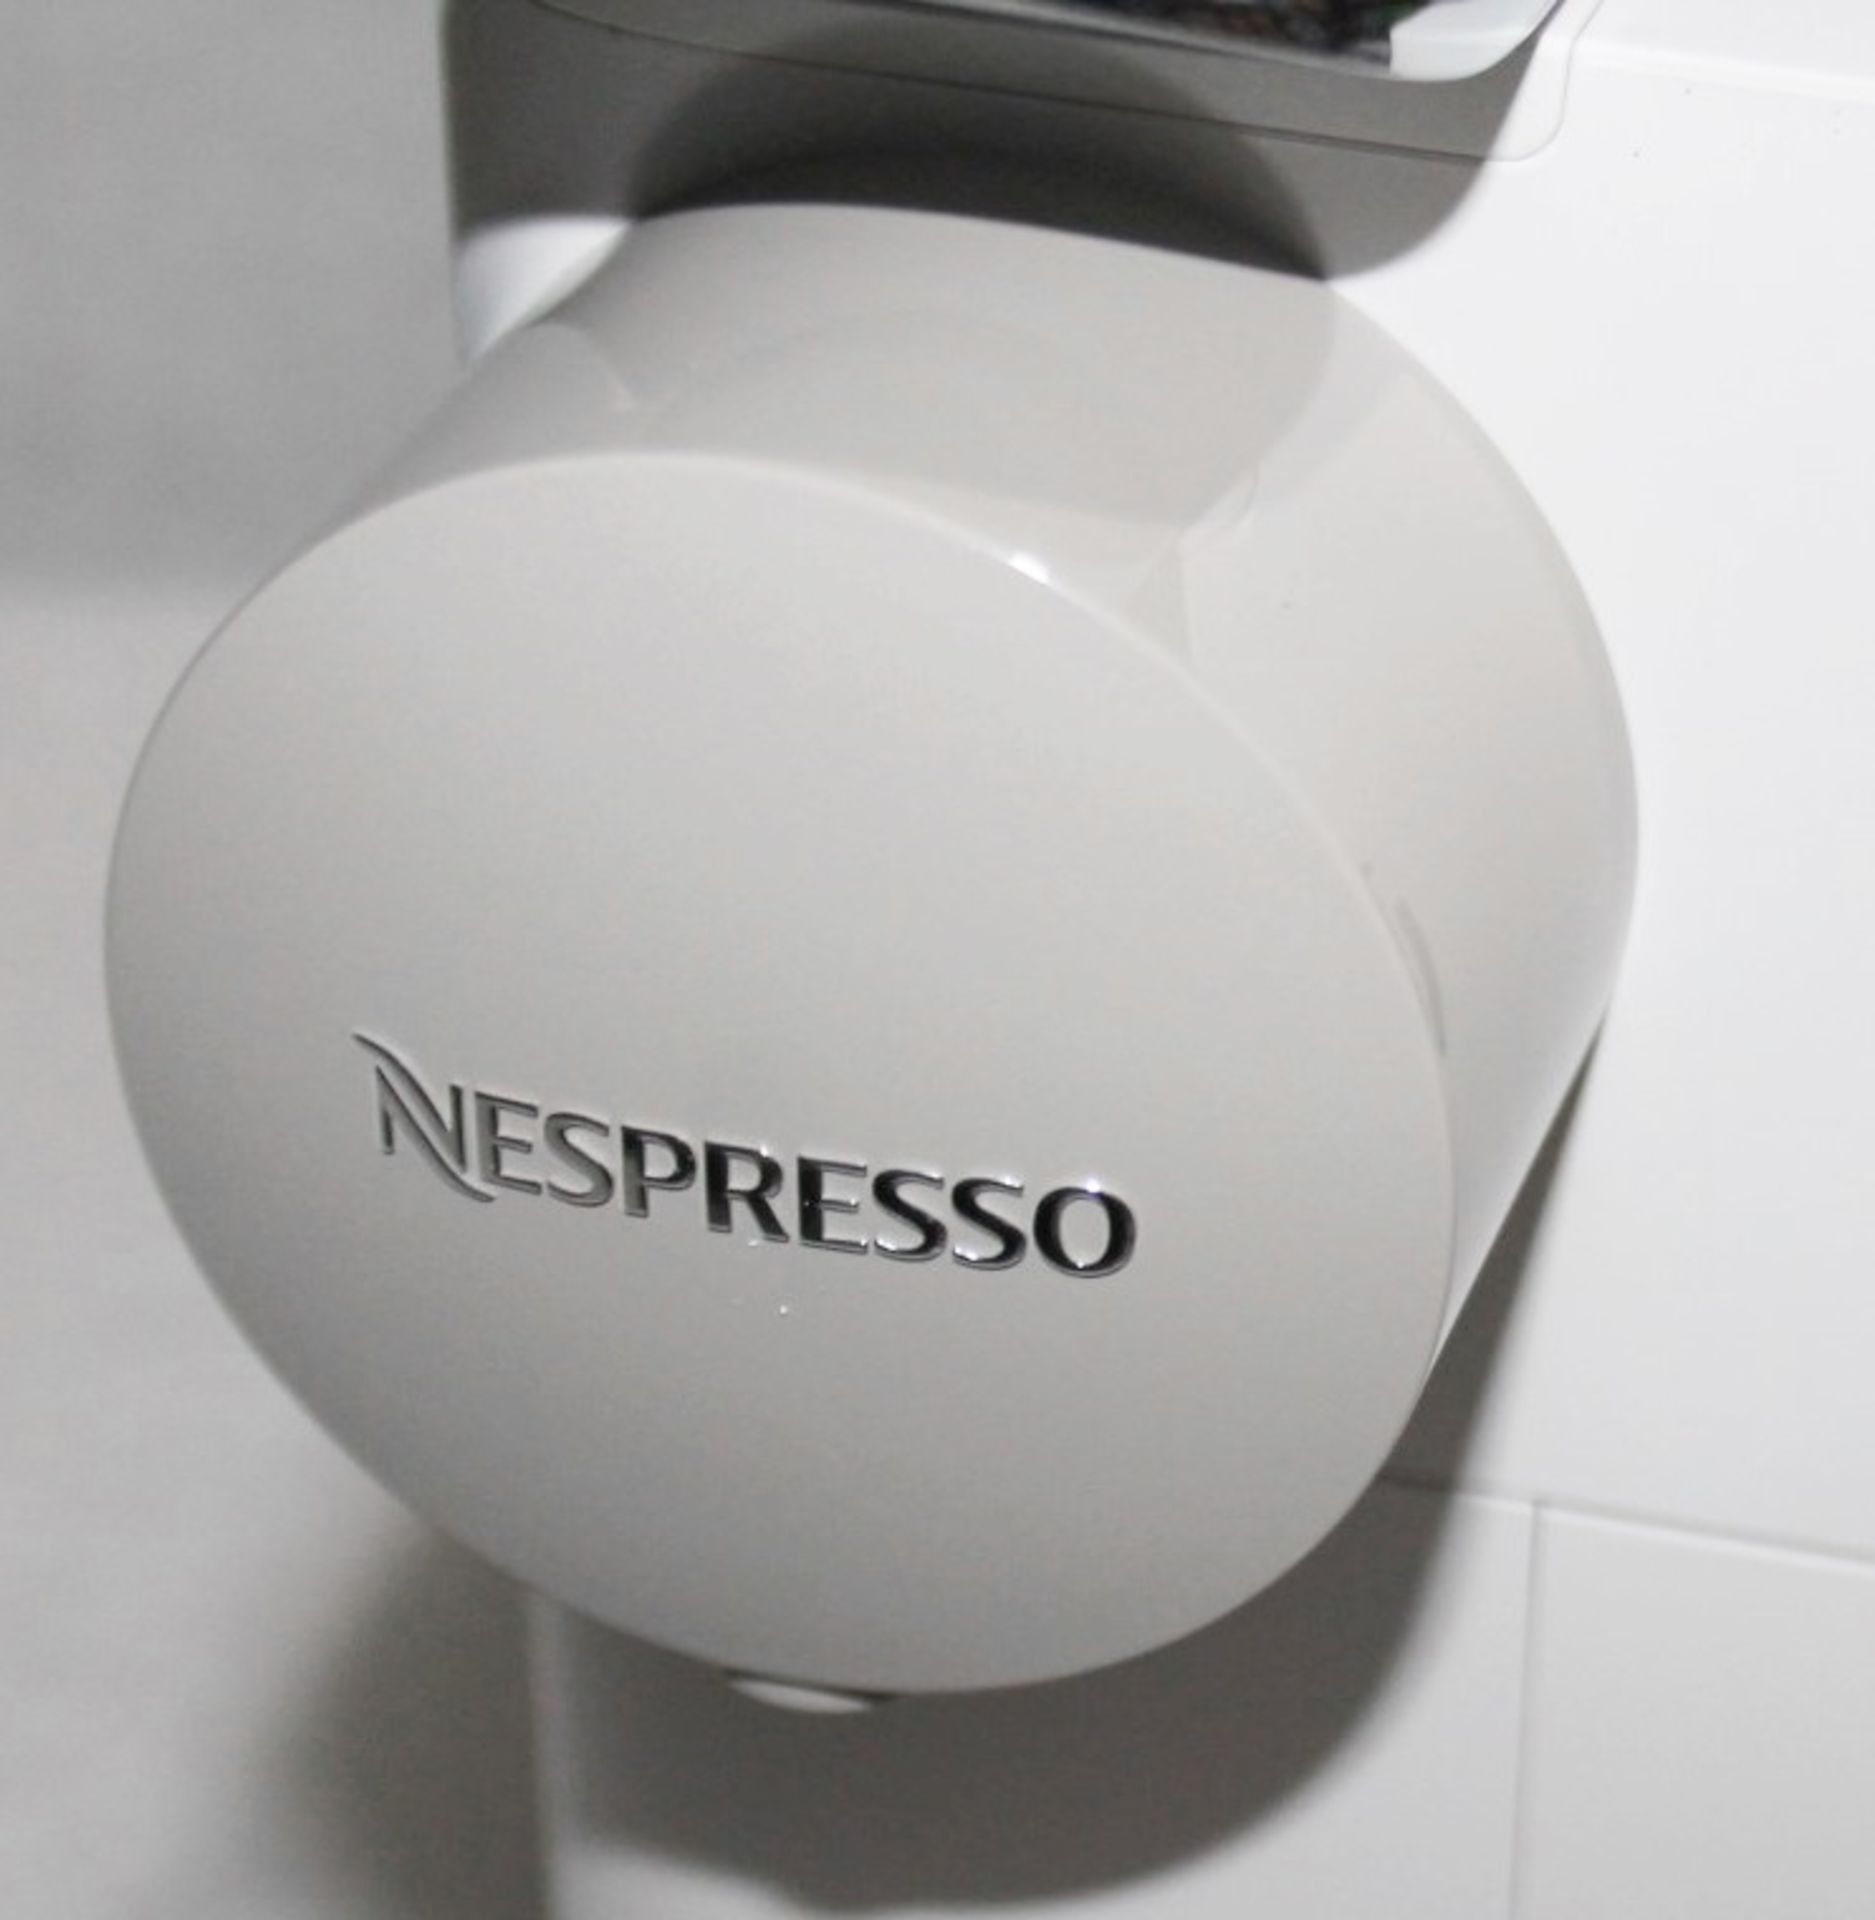 1 x DeLonghi Lattissima One Nespresso Coffee Machine - Original Price £258.00 - Boxed - Image 16 of 18